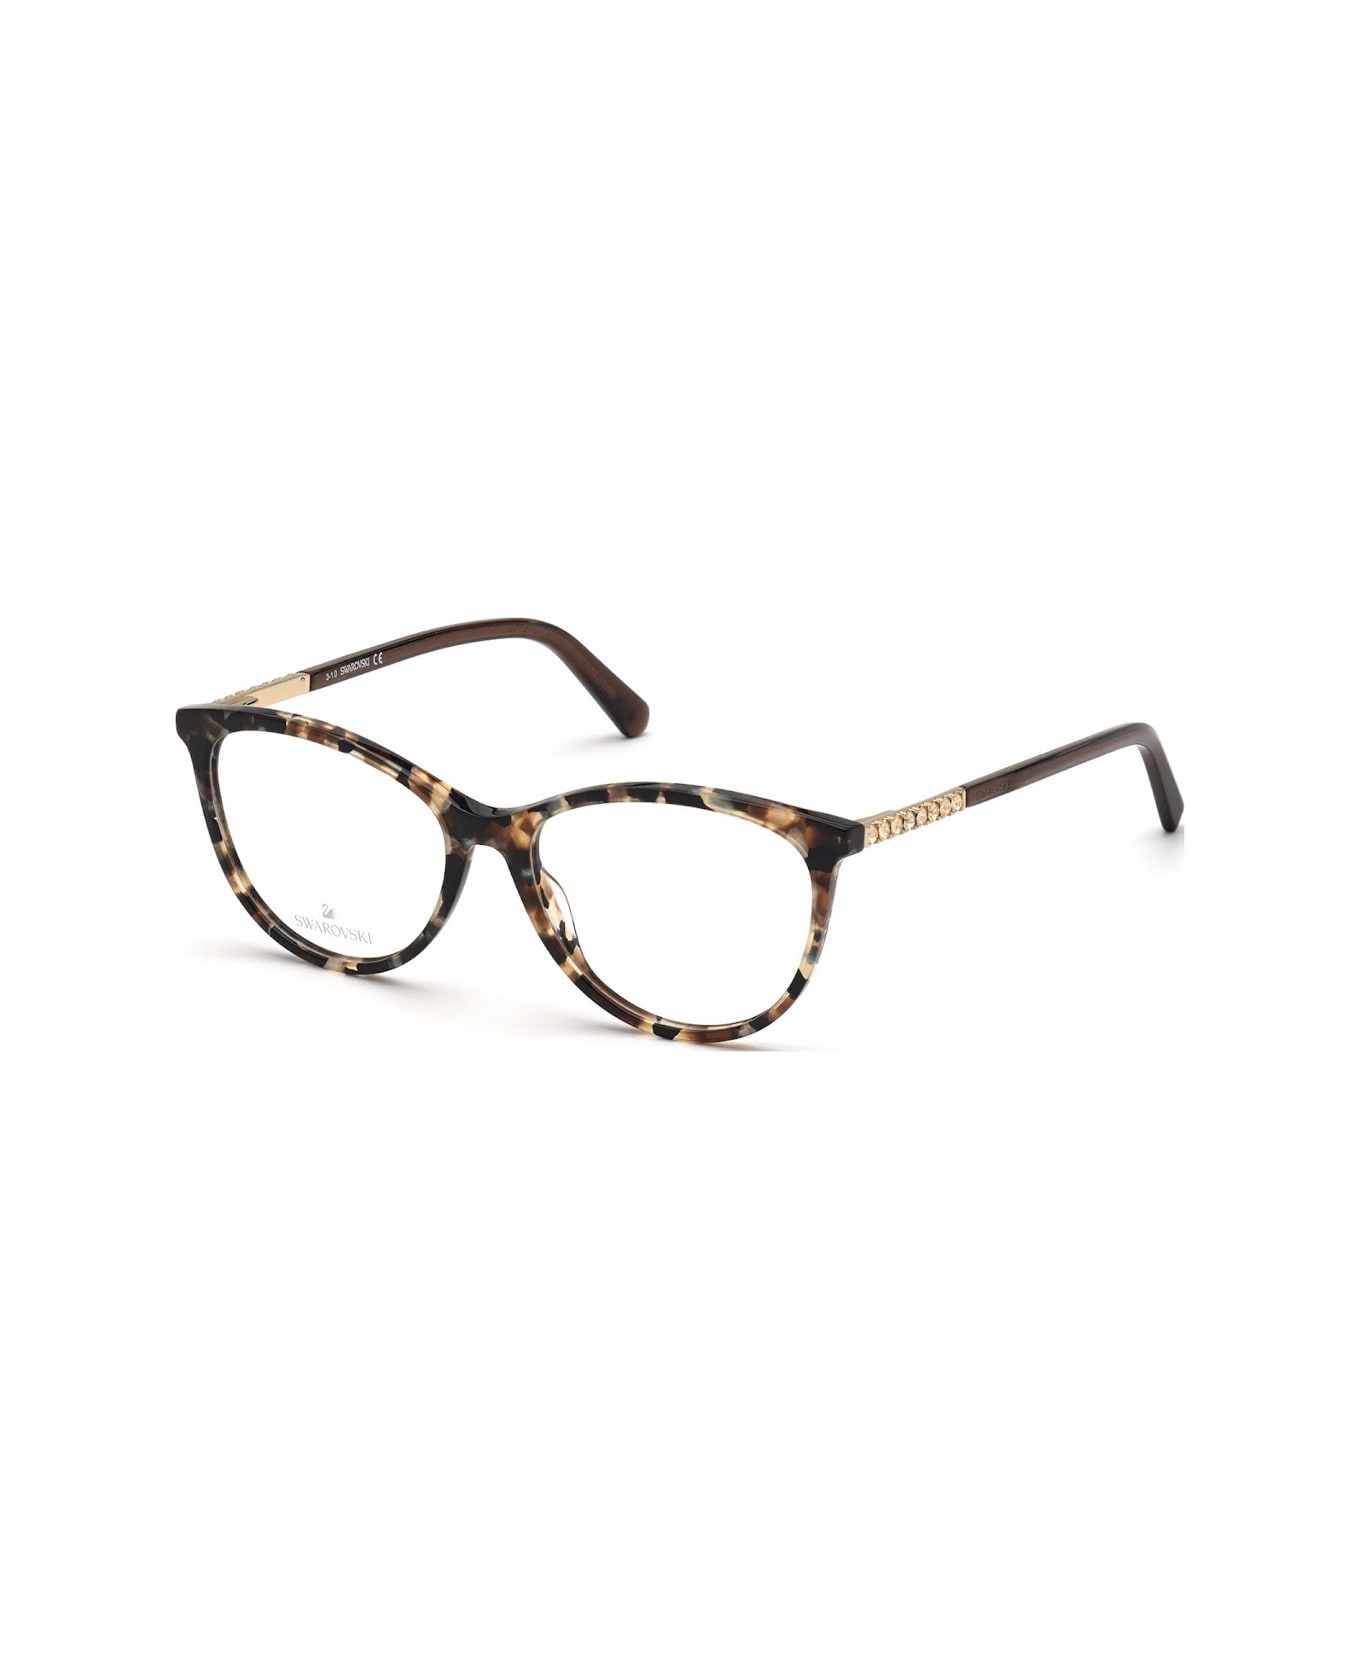 Swarovski sk5396 055 Glasses - Tartarugato nero e marrone